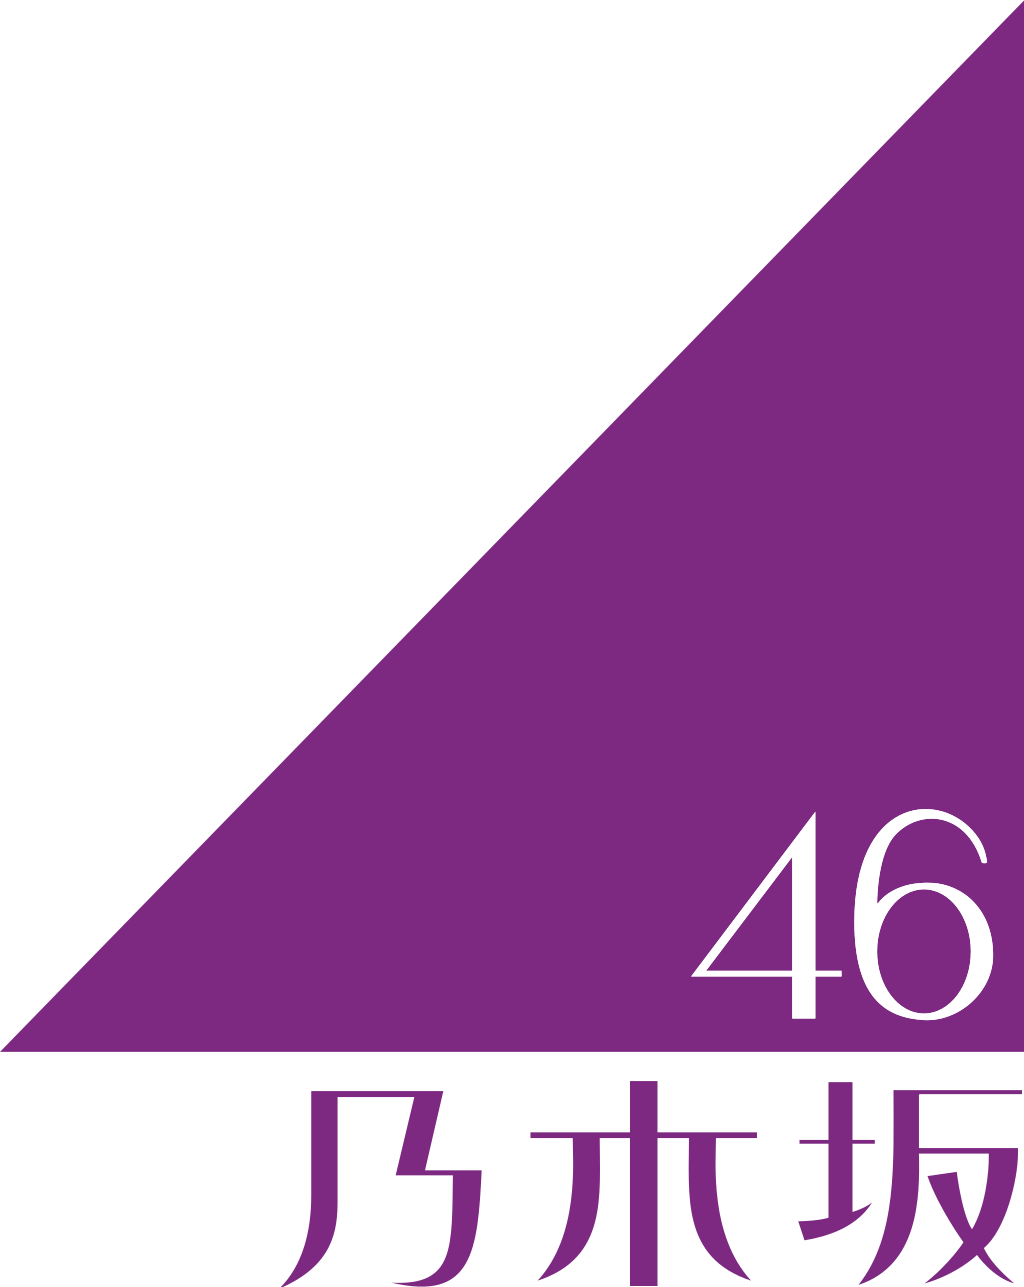 乃木坂46のロゴ